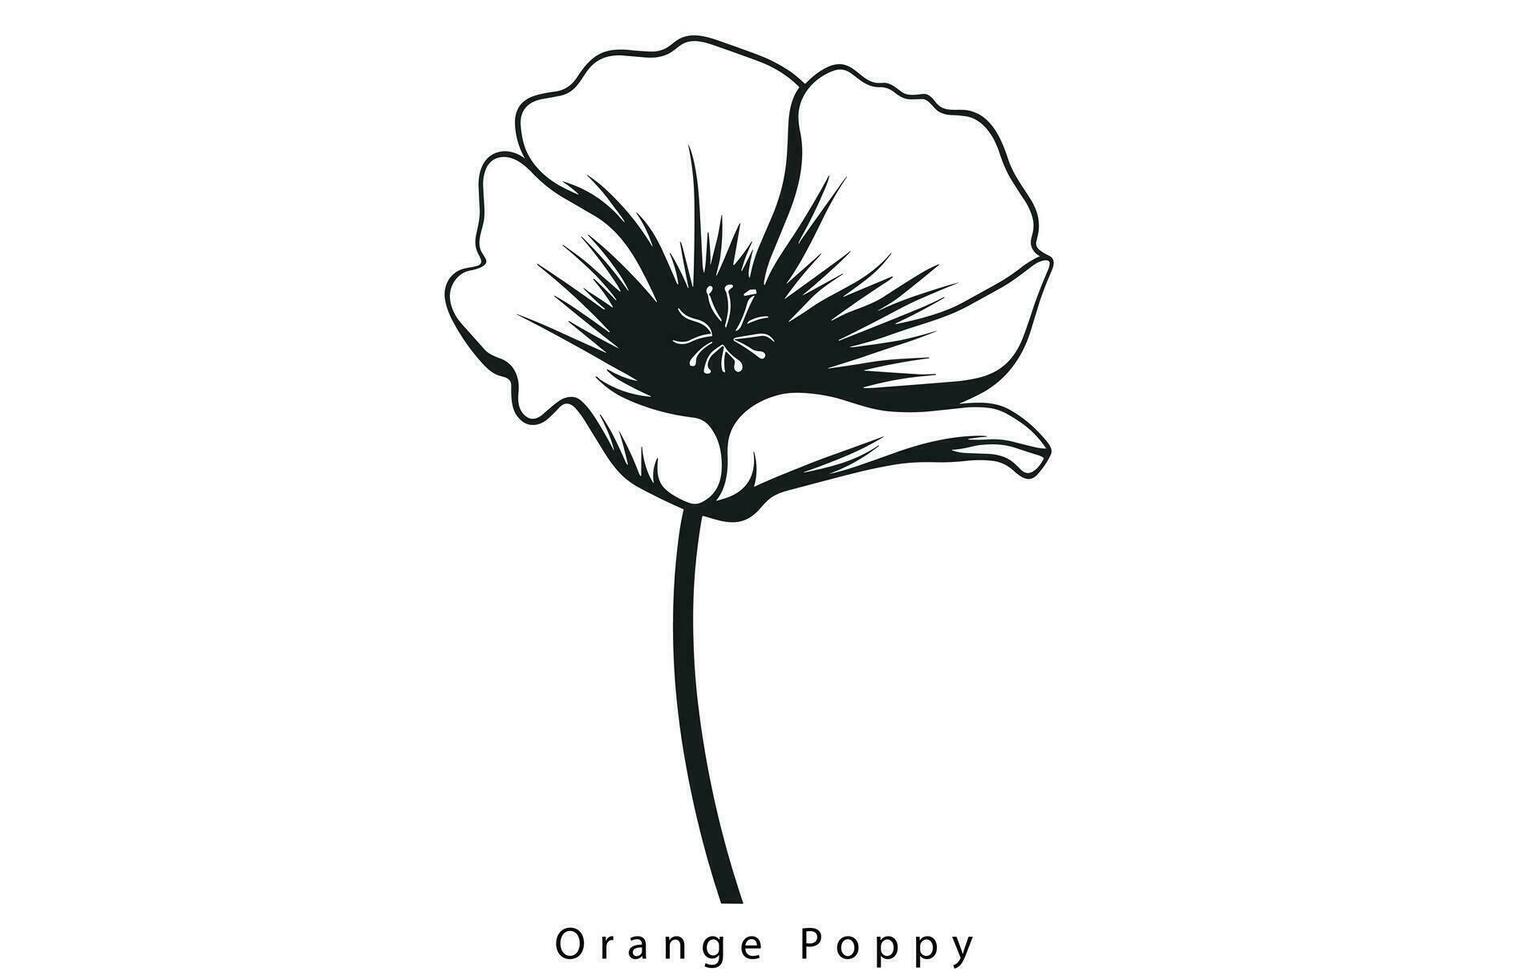 California Poppy, California Poppy Vector, Poppy Flower, Poppies Vector, Pretty Flower Vector, vector